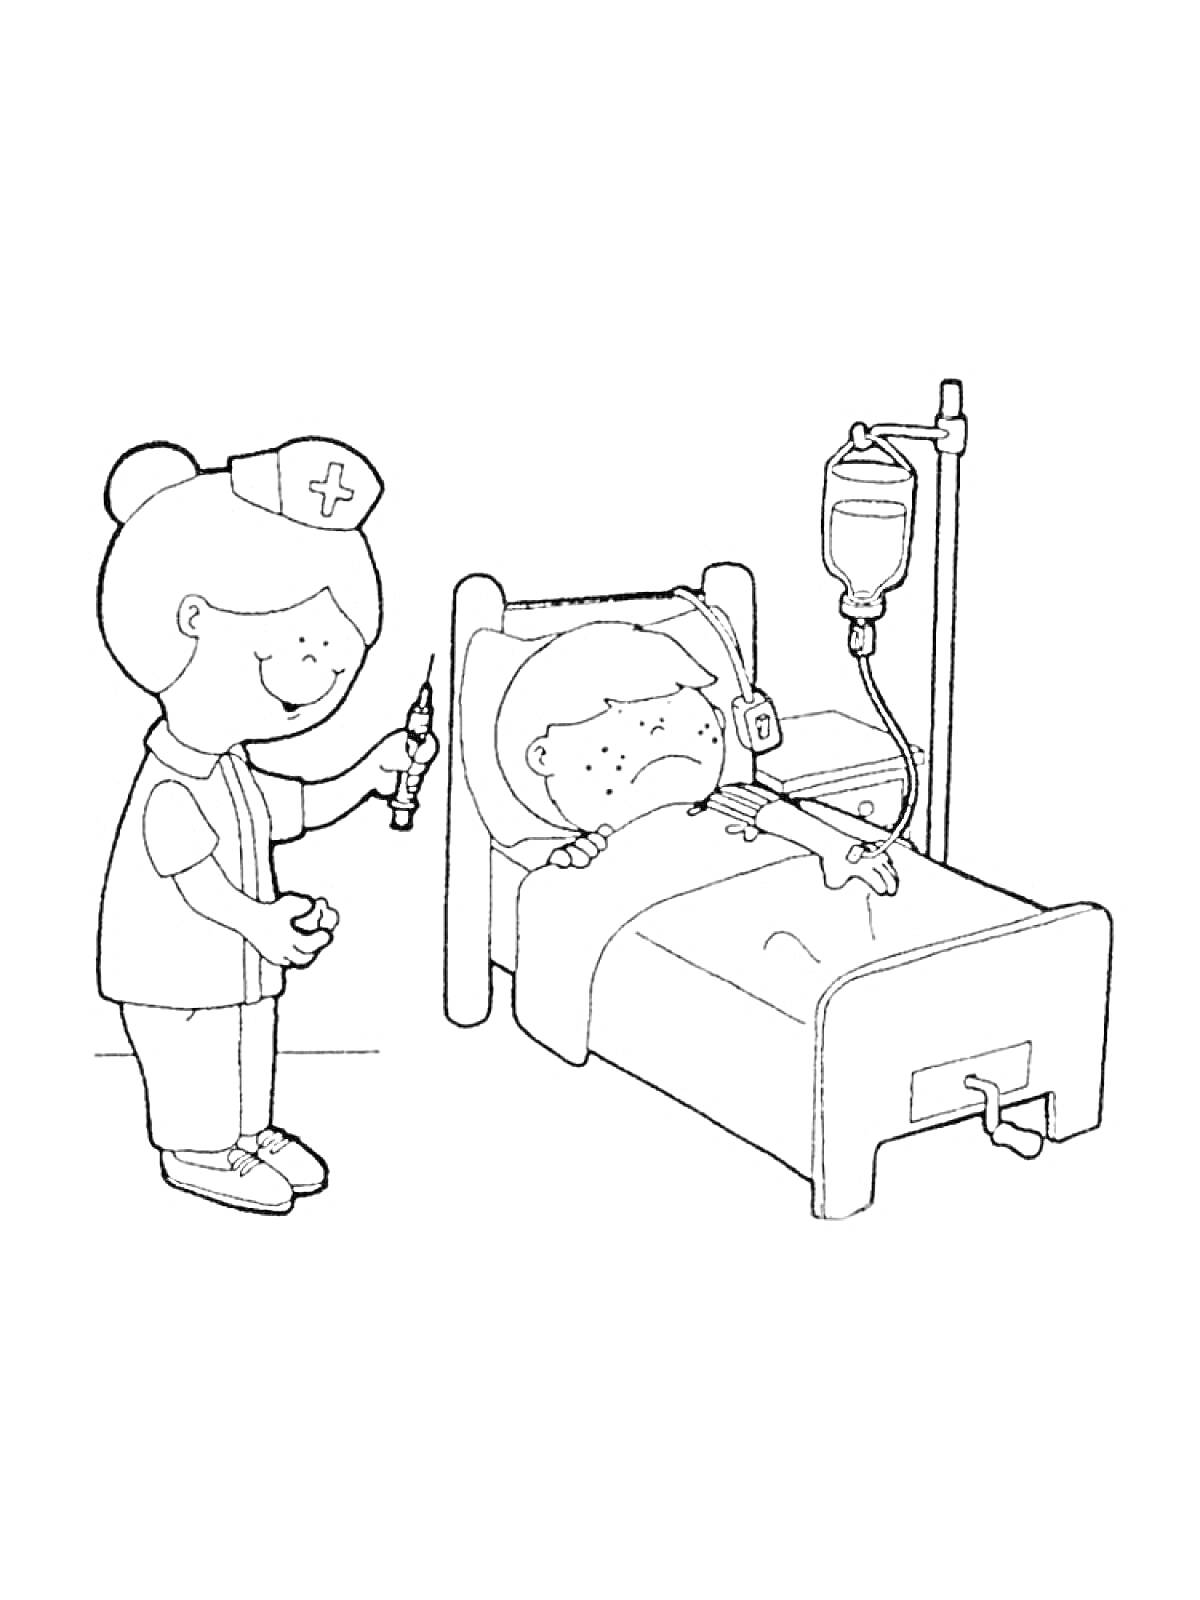 Раскраска Медсестра с шприцем и пациент в больничной кровати с капельницей